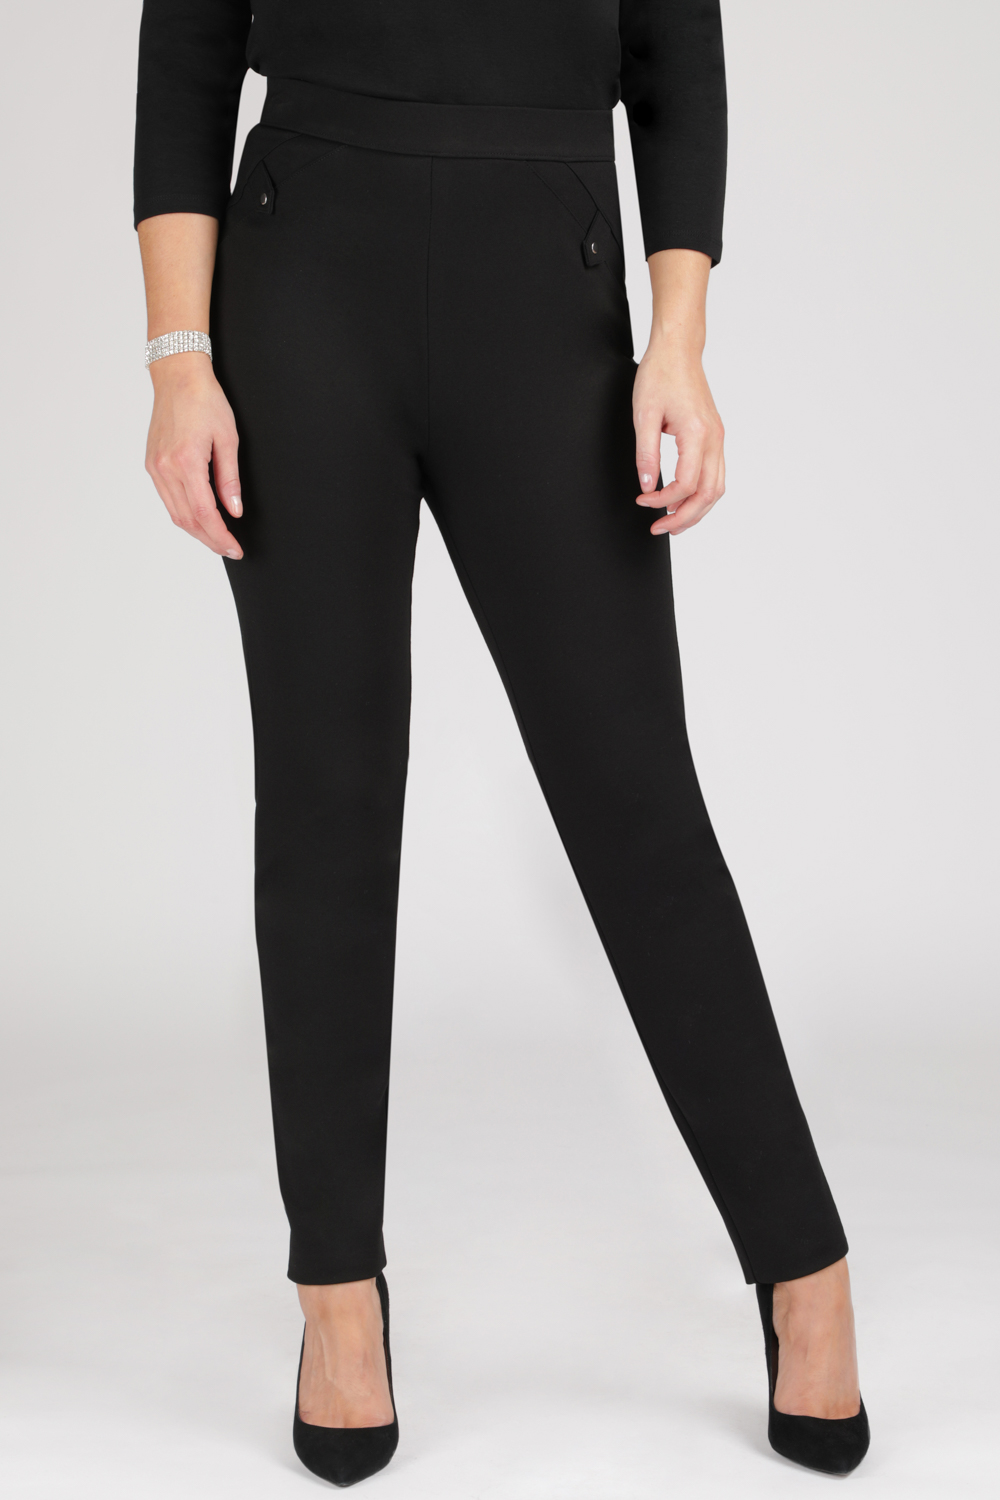 Black Ponte Slim Leg Pants  Women's Pants - Motto Fashions